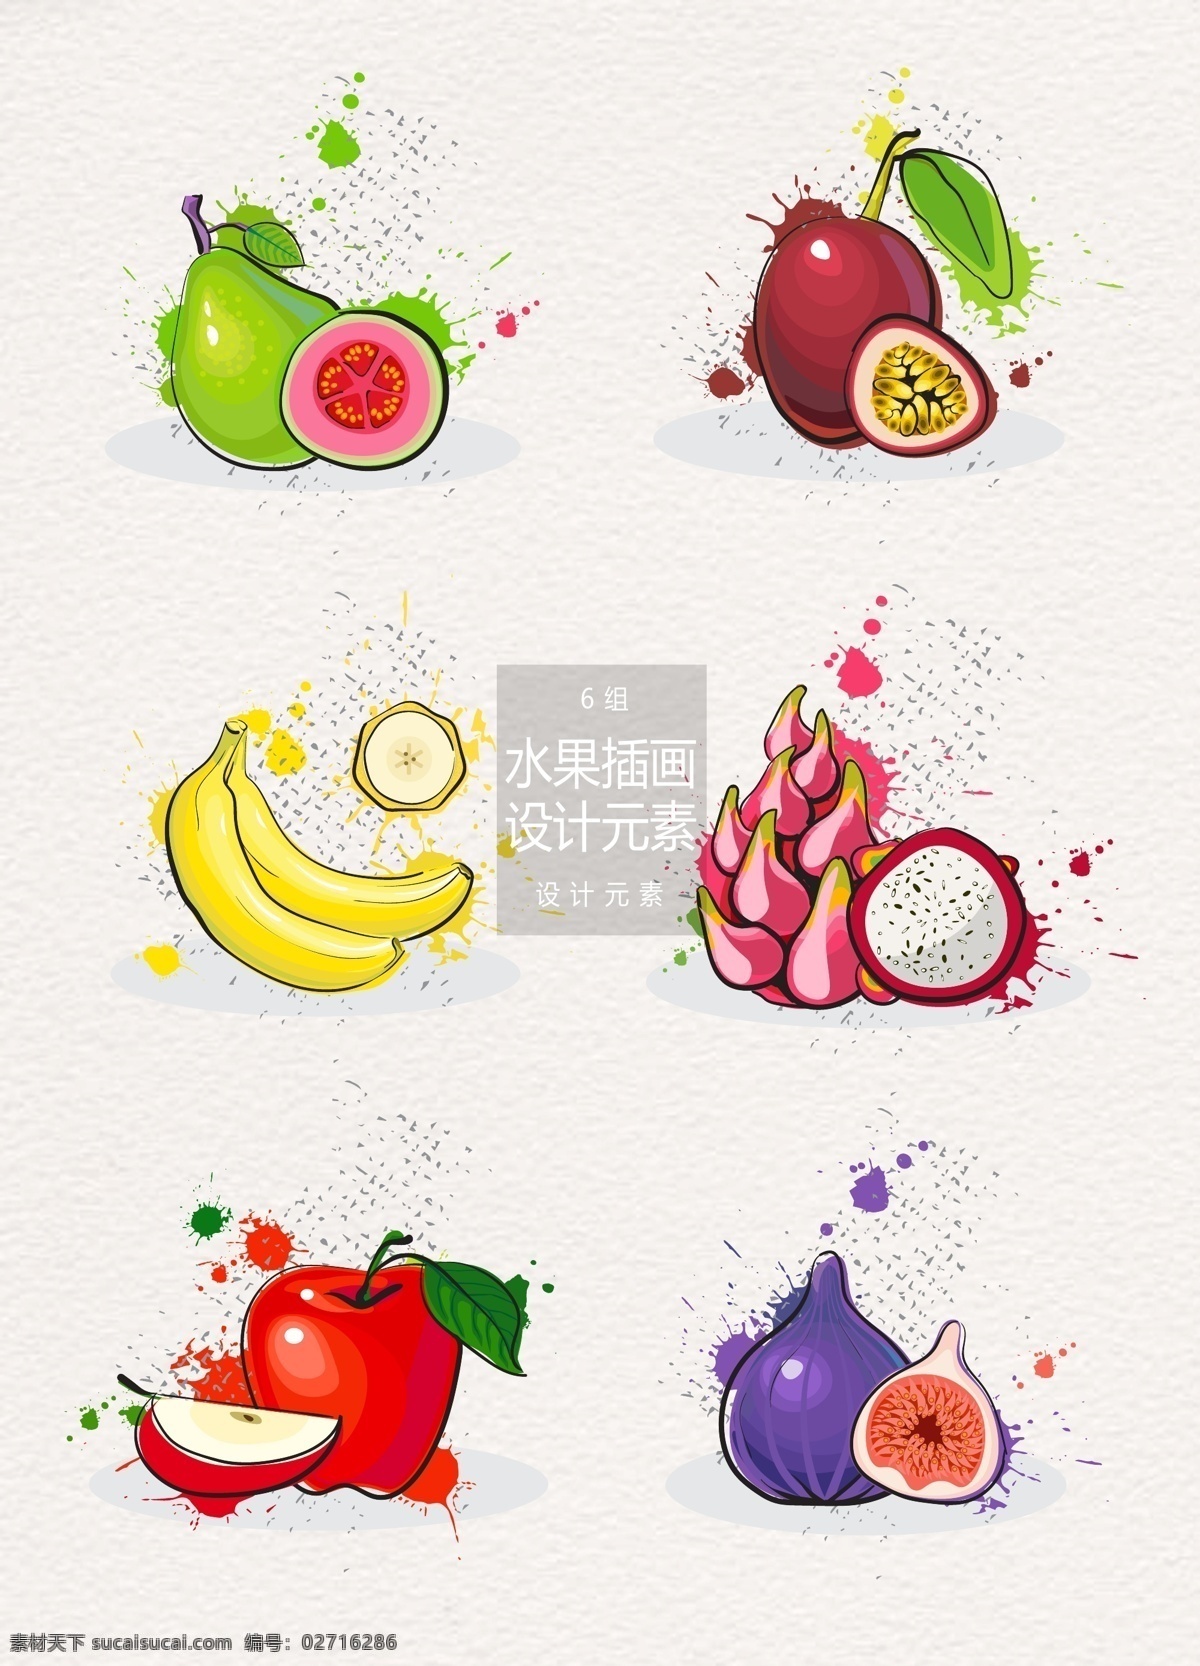 手绘 水果 插画 元素 设计元素 手绘水果 香蕉 火龙果 苹果 水果插画 百香果